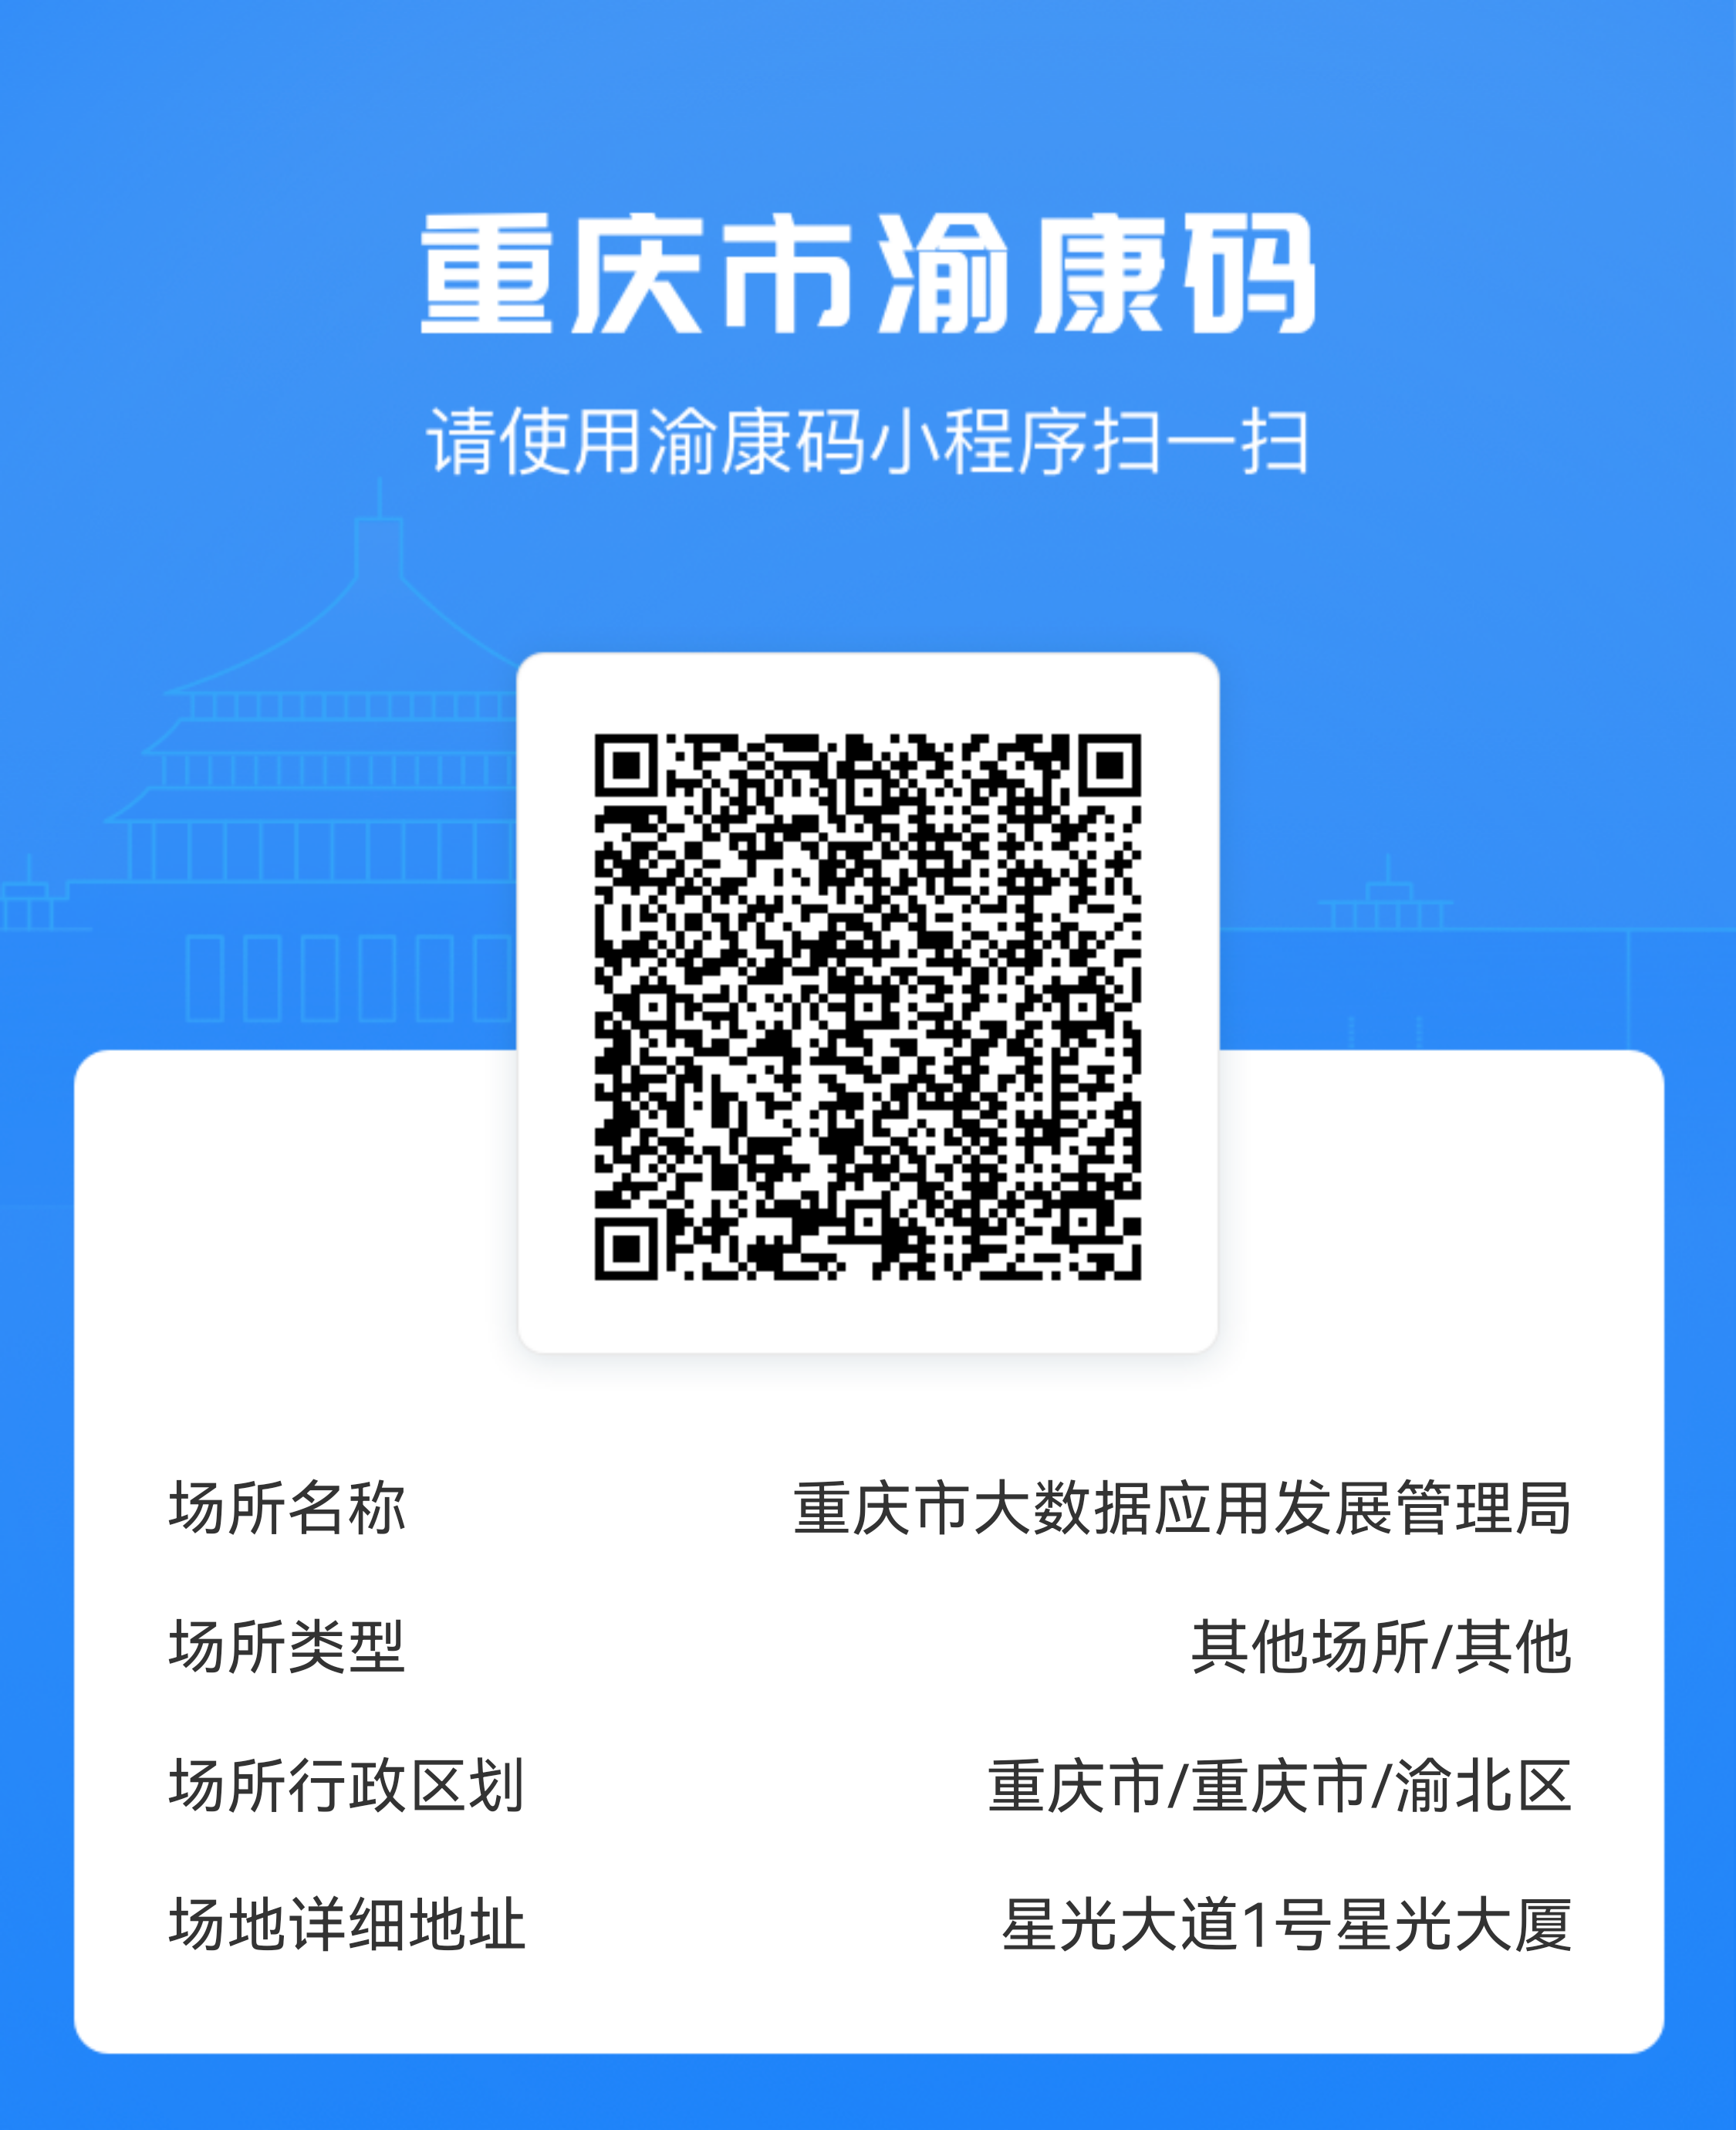 通过重庆市健康出行一码通"渝康码)小程序扫"场所码,获取扫码信息